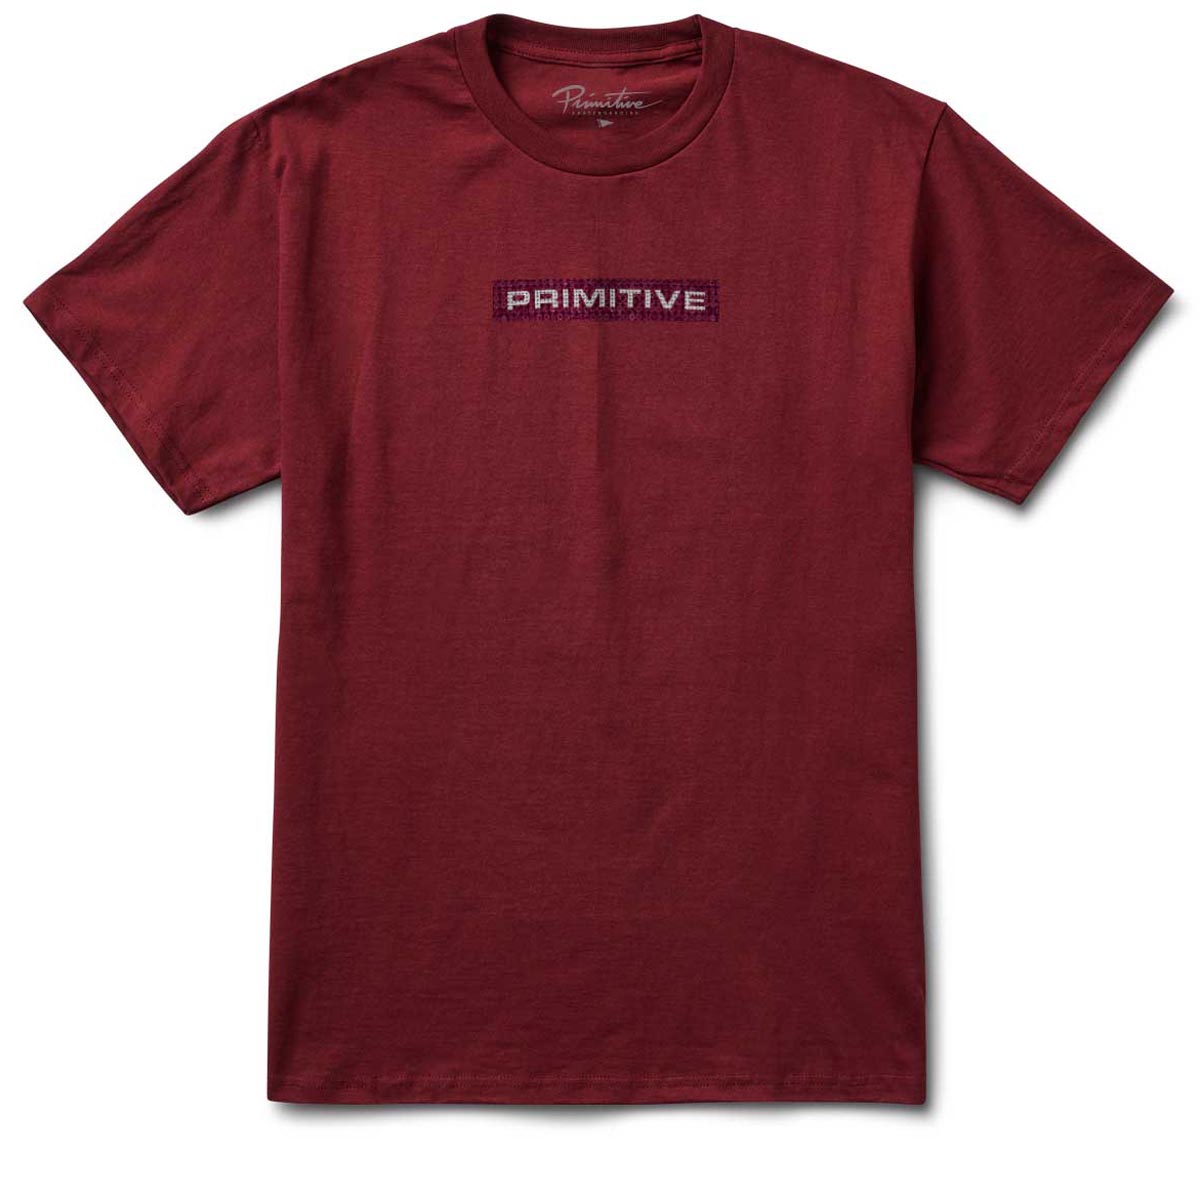 Primitive Boxed Rhinestone T-Shirt - Burgundy image 1